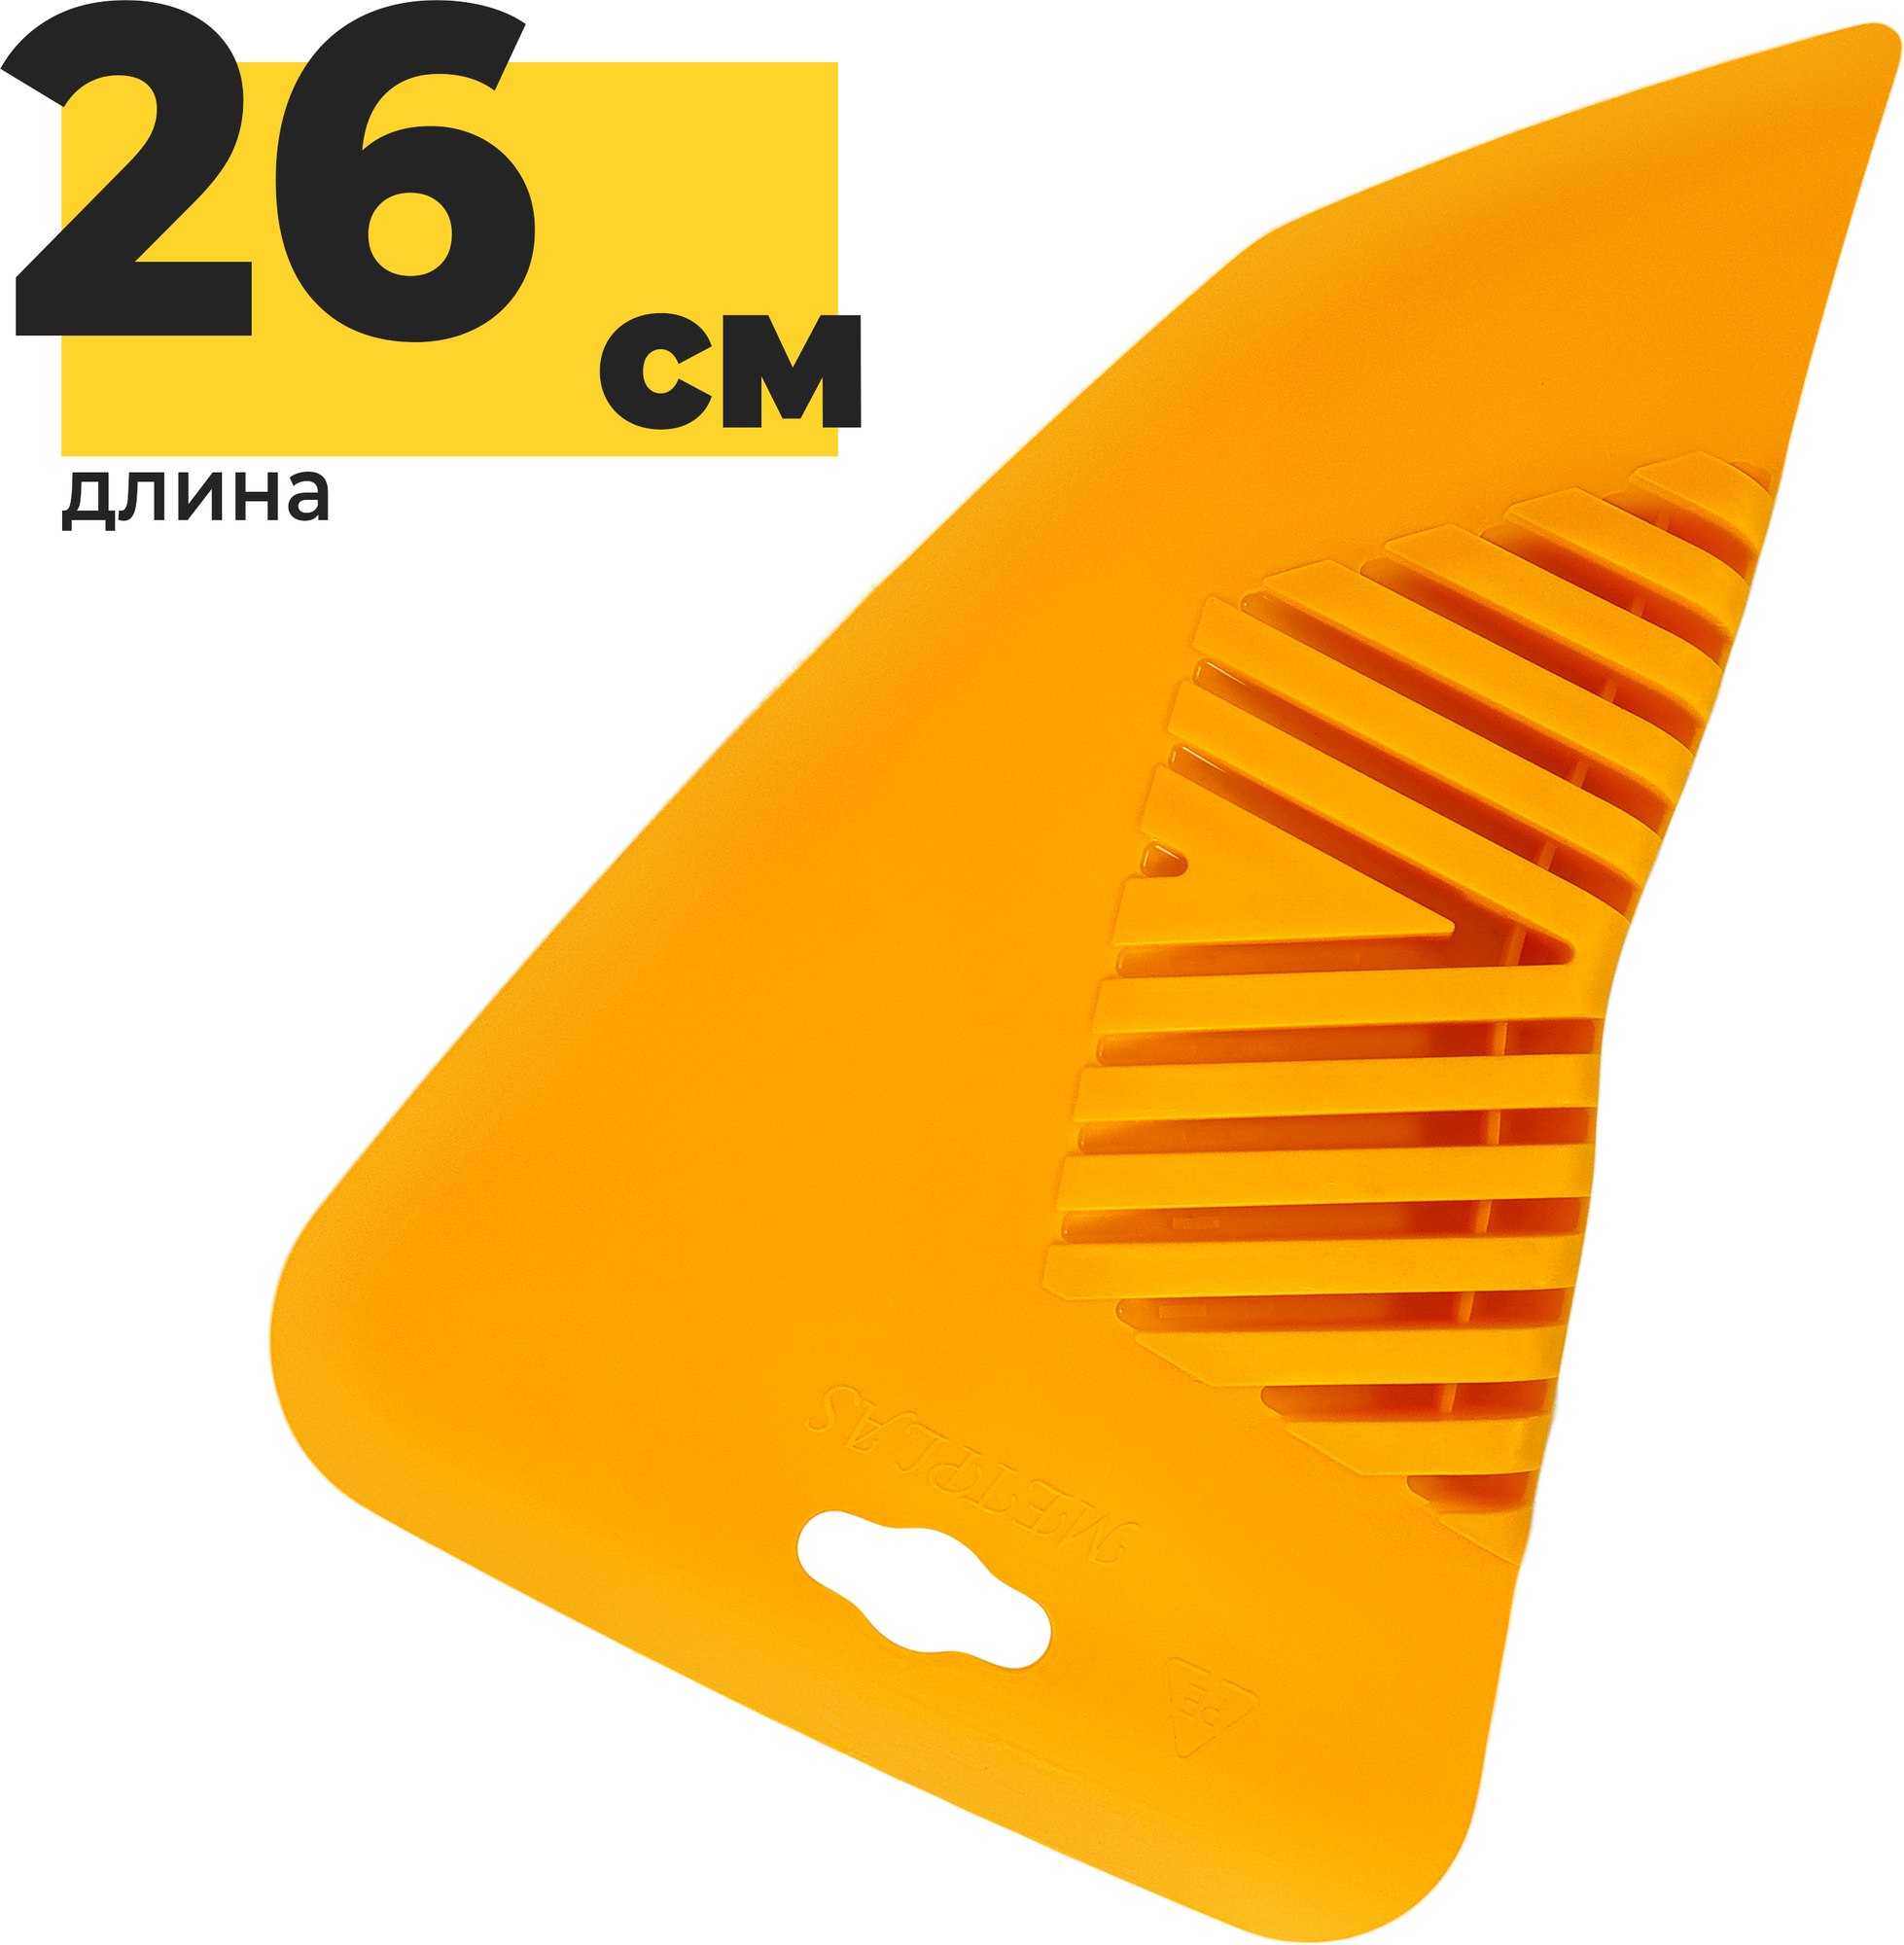 Шпатель для разглаживания обоев Yoma Home, 26 см универсальный, пластиковый желтый